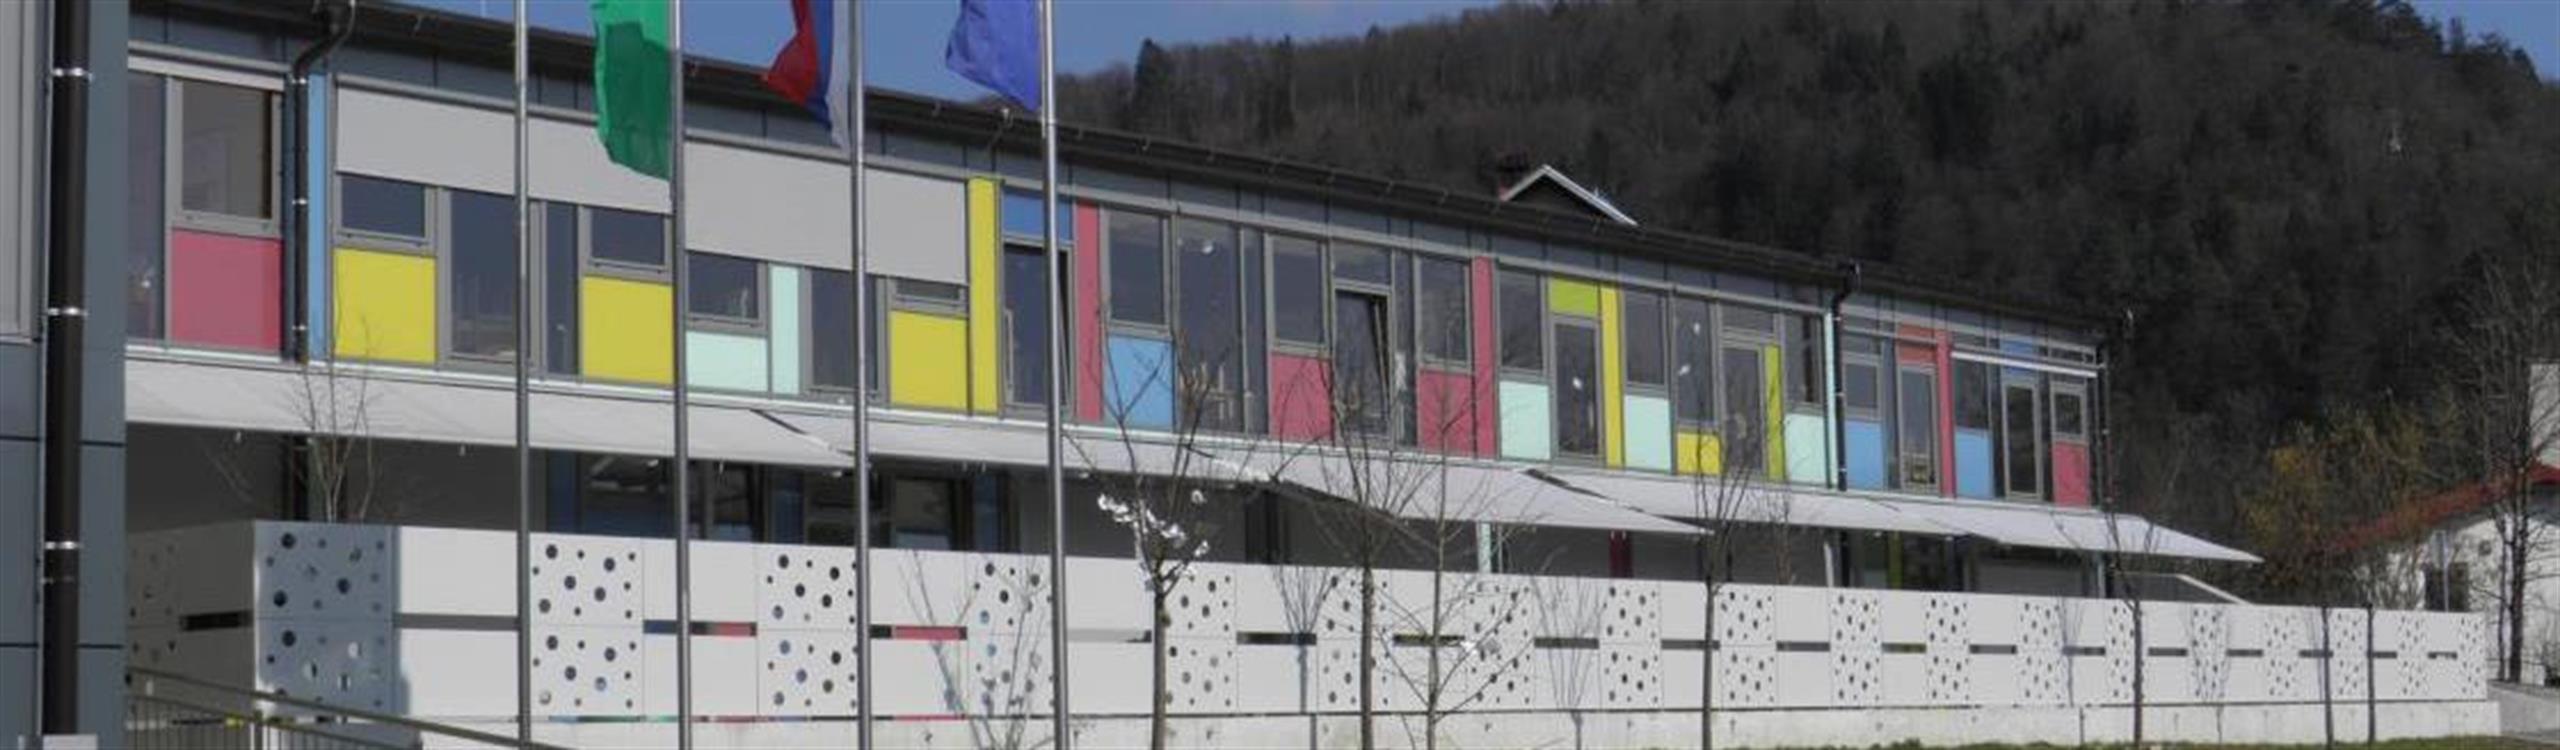 Osnovna šola Polhov Gradec